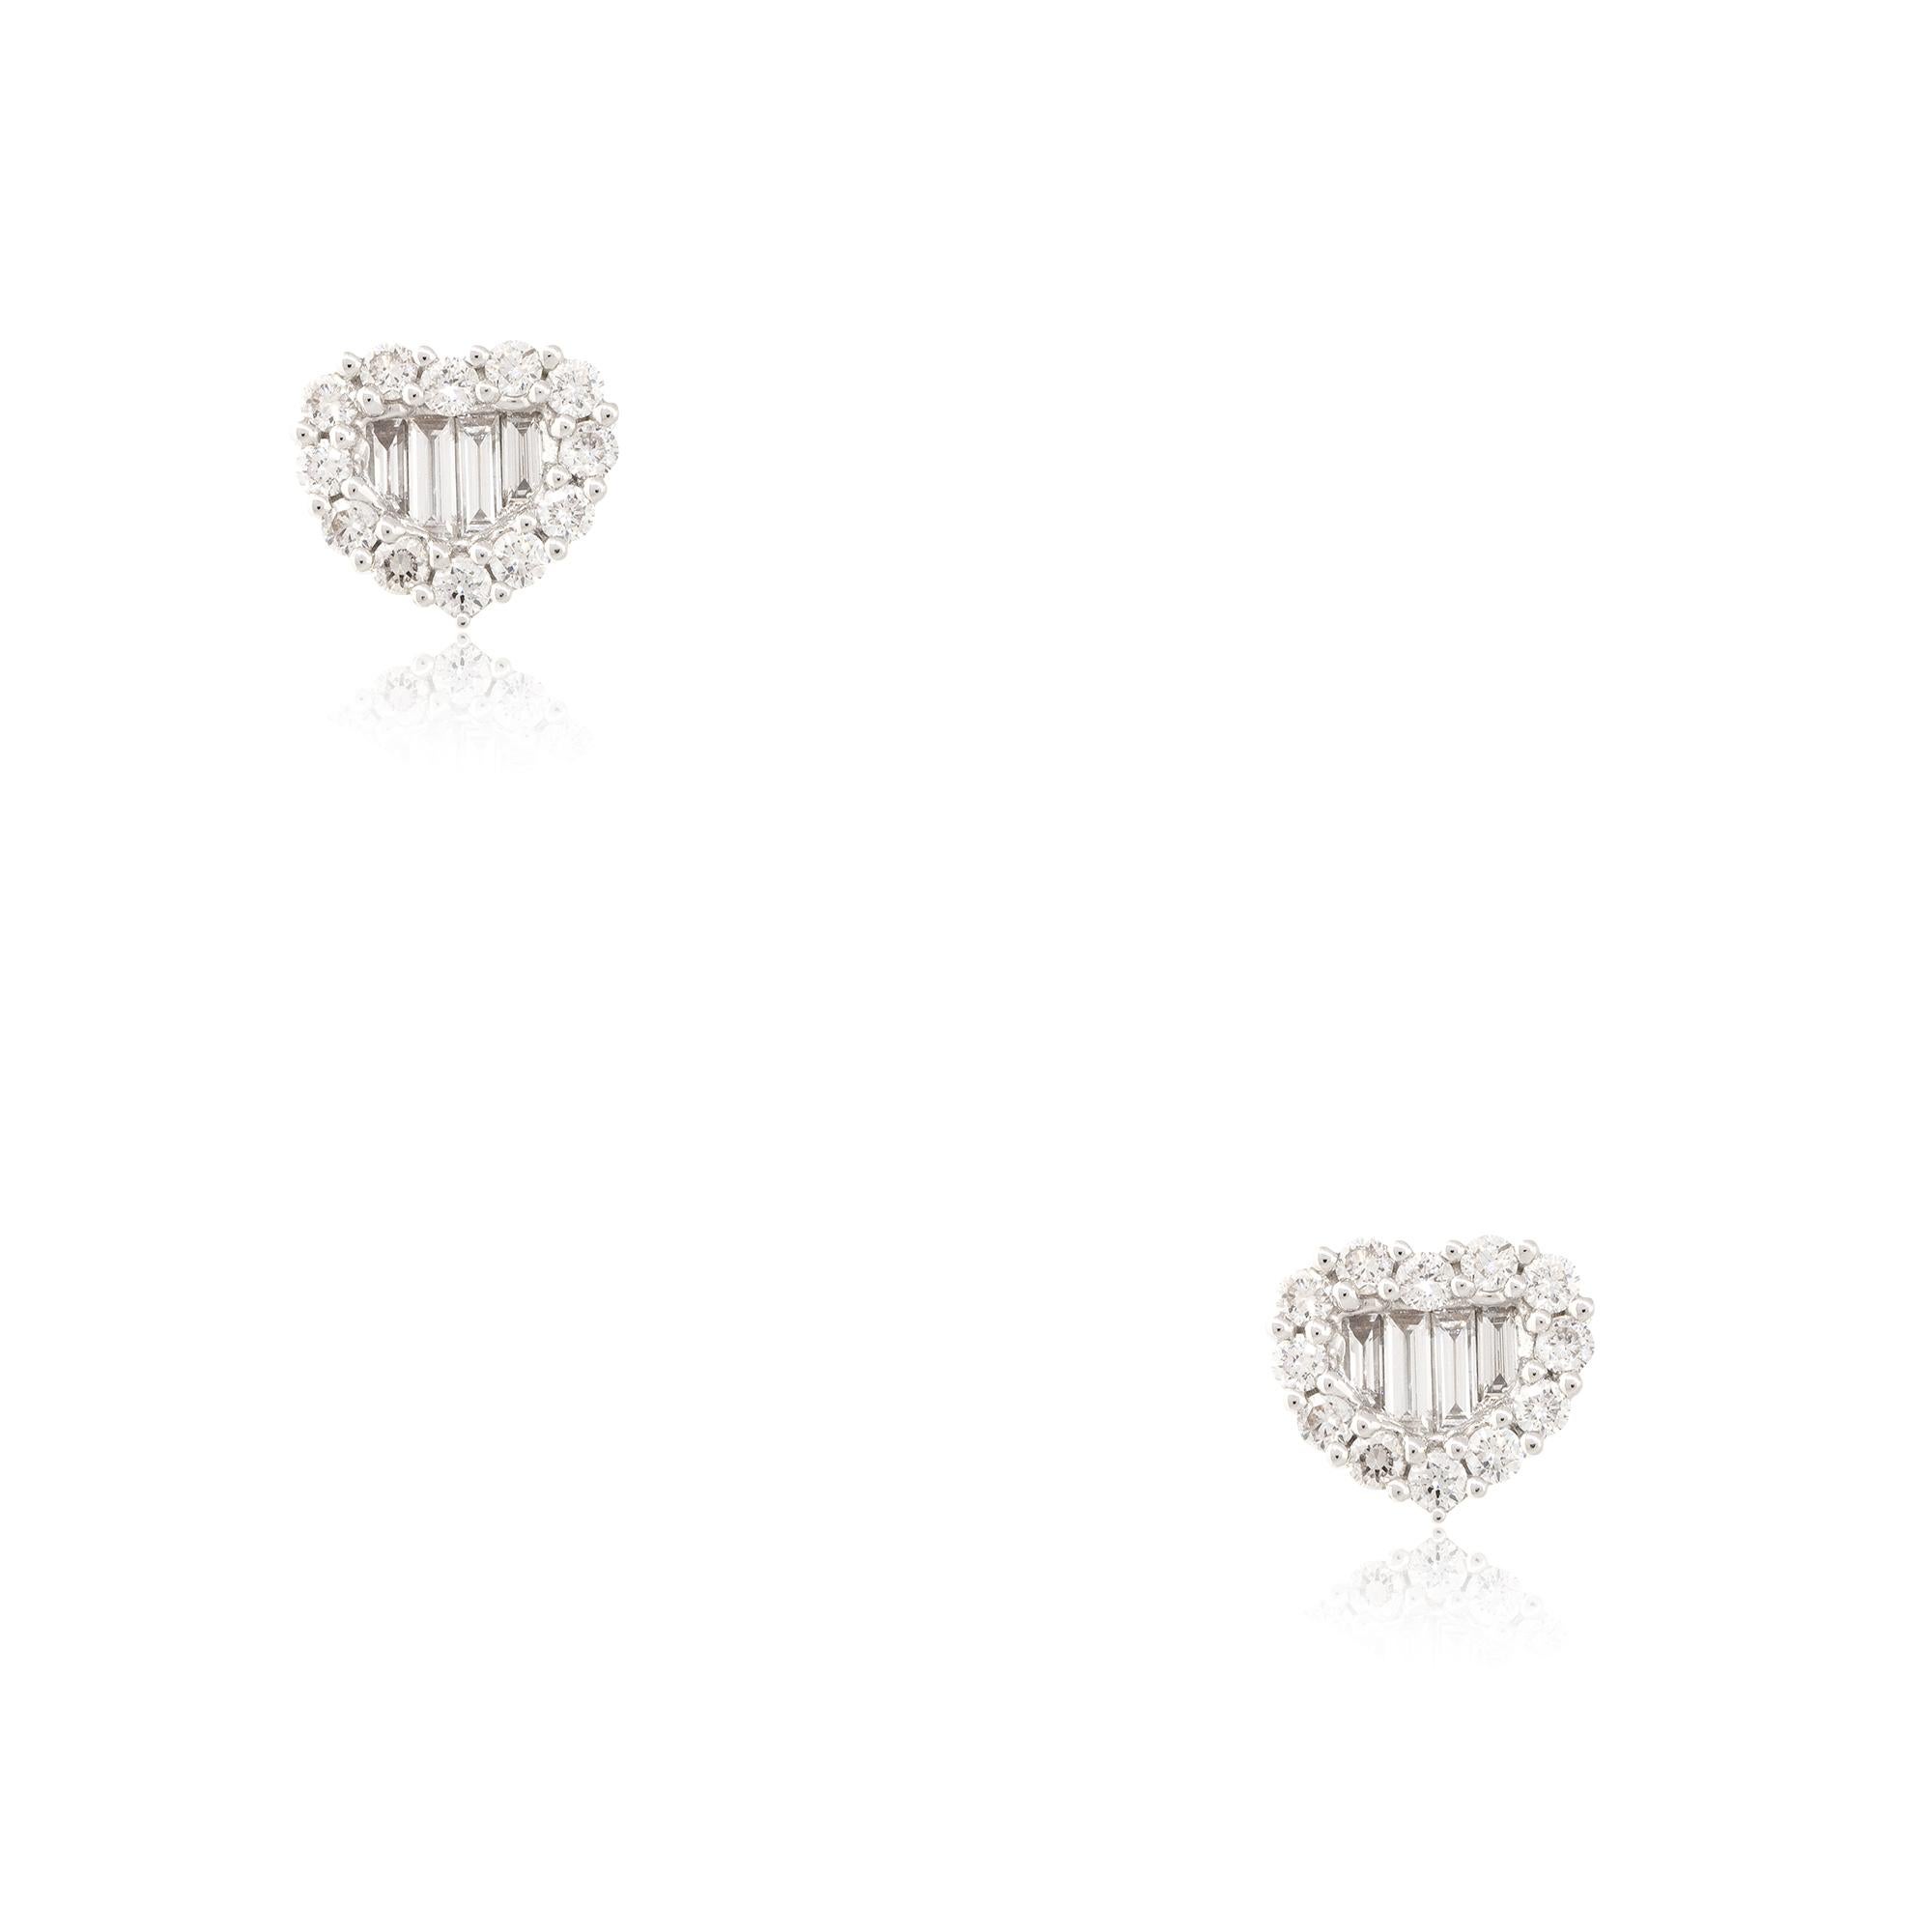 18k Weißgold 1,0ctw runder Brillant und Baguette Diamant Herz Ohrstecker
MATERIAL: 18k Weißgold
Diamant-Details: Ungefähr 1.0w von Diamanten im runden Brillant- und Baguetteschliff
Artikel Abmessungen: 10,5 mm x 3,3 mm x 9,13 mm 
Ohrring-Rückseiten: